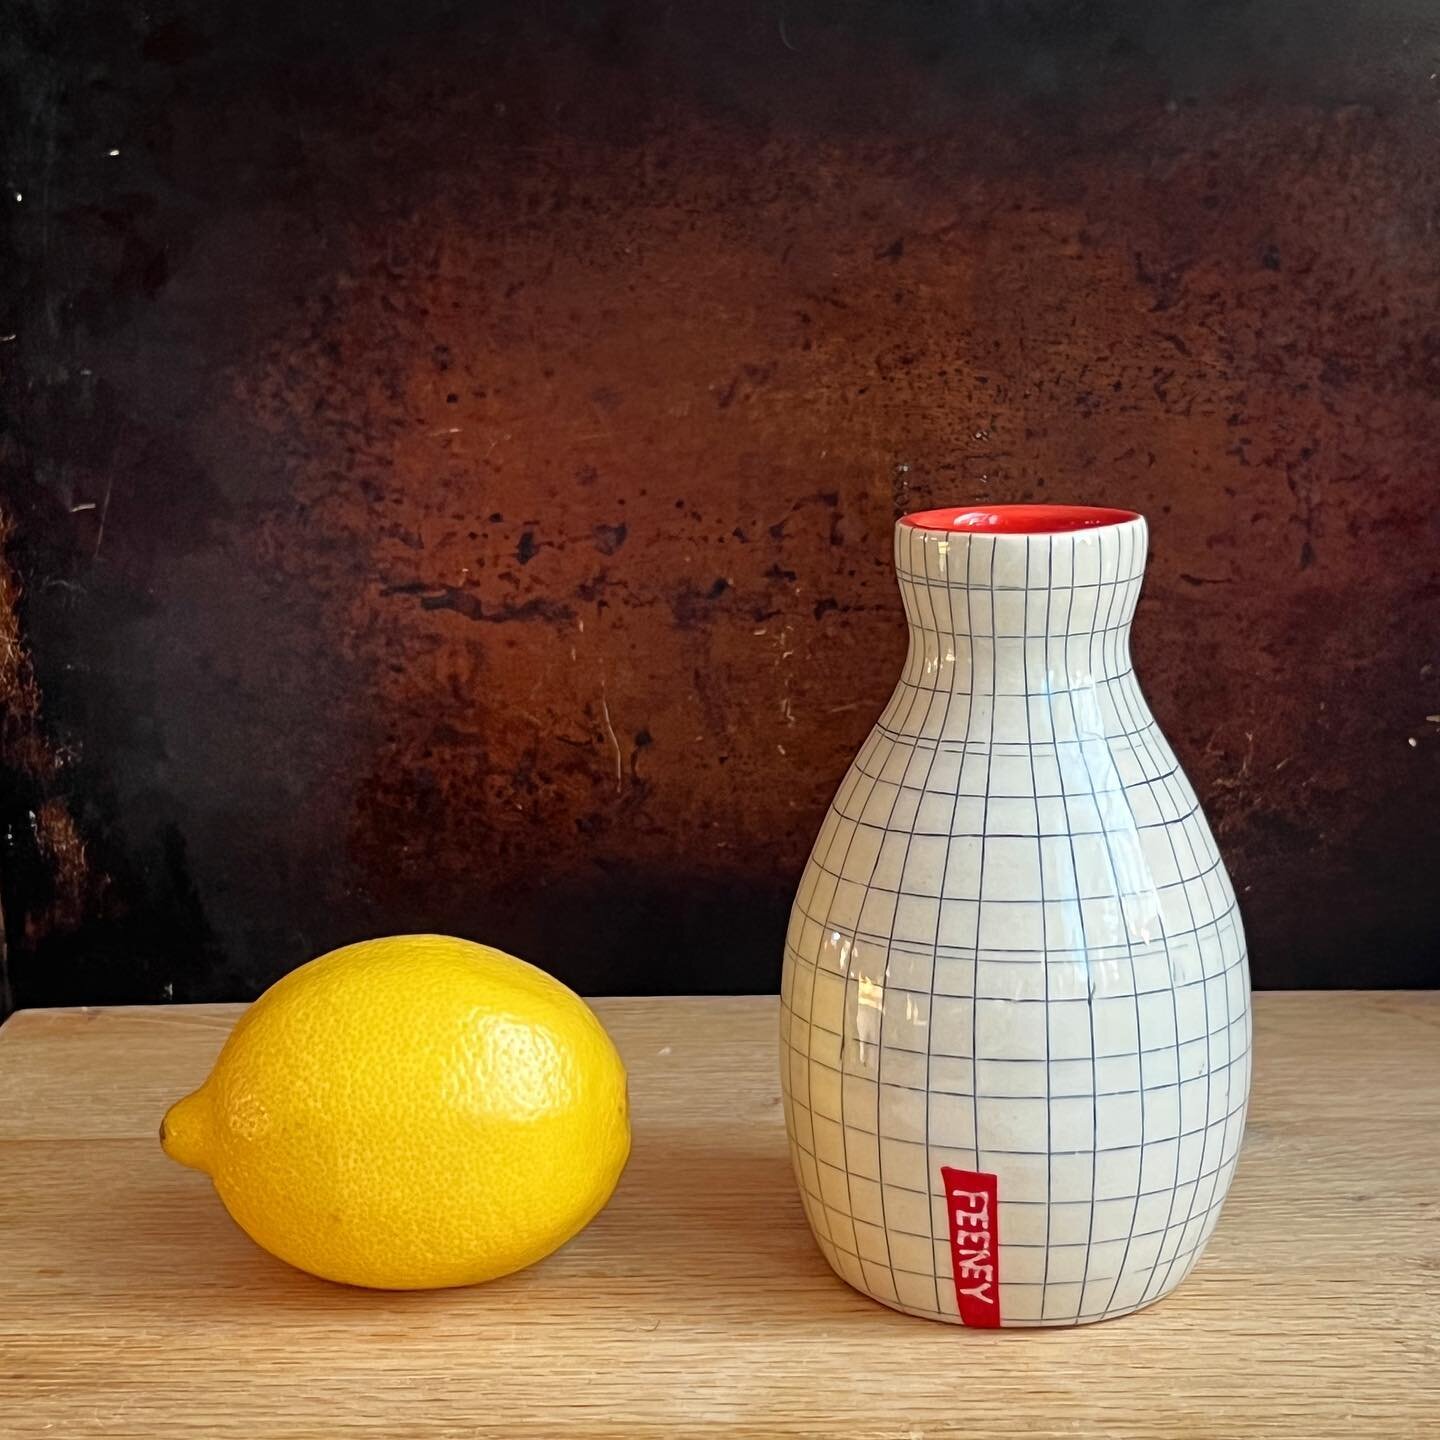 Lemon for scale. Also, it&rsquo;s SO pretty. :)